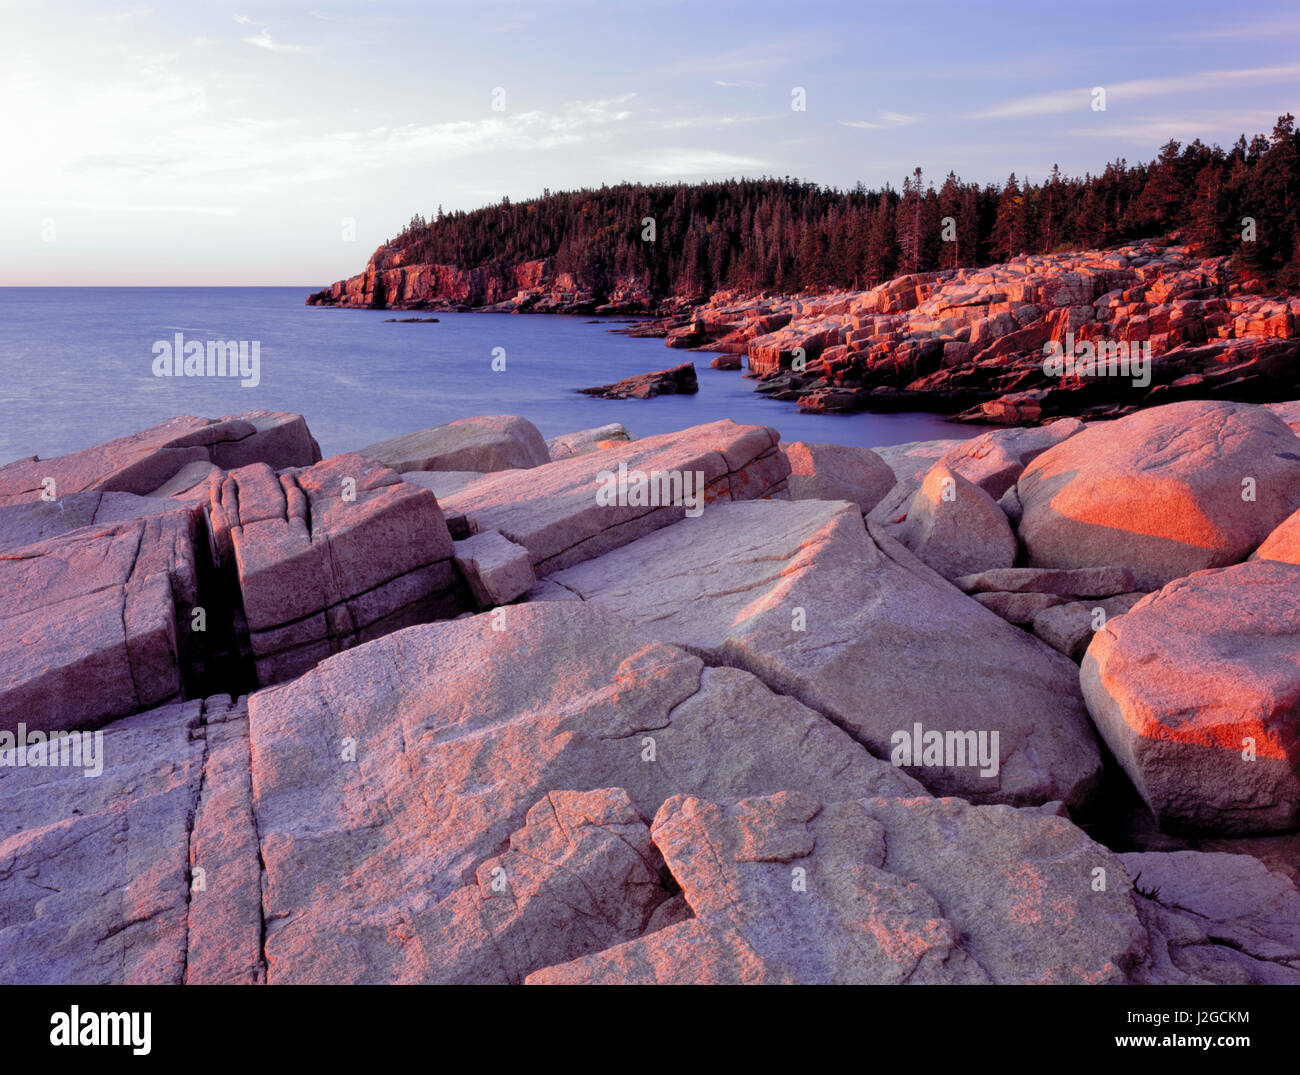 L'Acadia National Park, Maine. USA. Granite fracturé au lever du soleil le long de la côte de l'océan Atlantique. Otter Cliffs à distance. Mt. Île déserte. Tailles disponibles (grand format) Banque D'Images